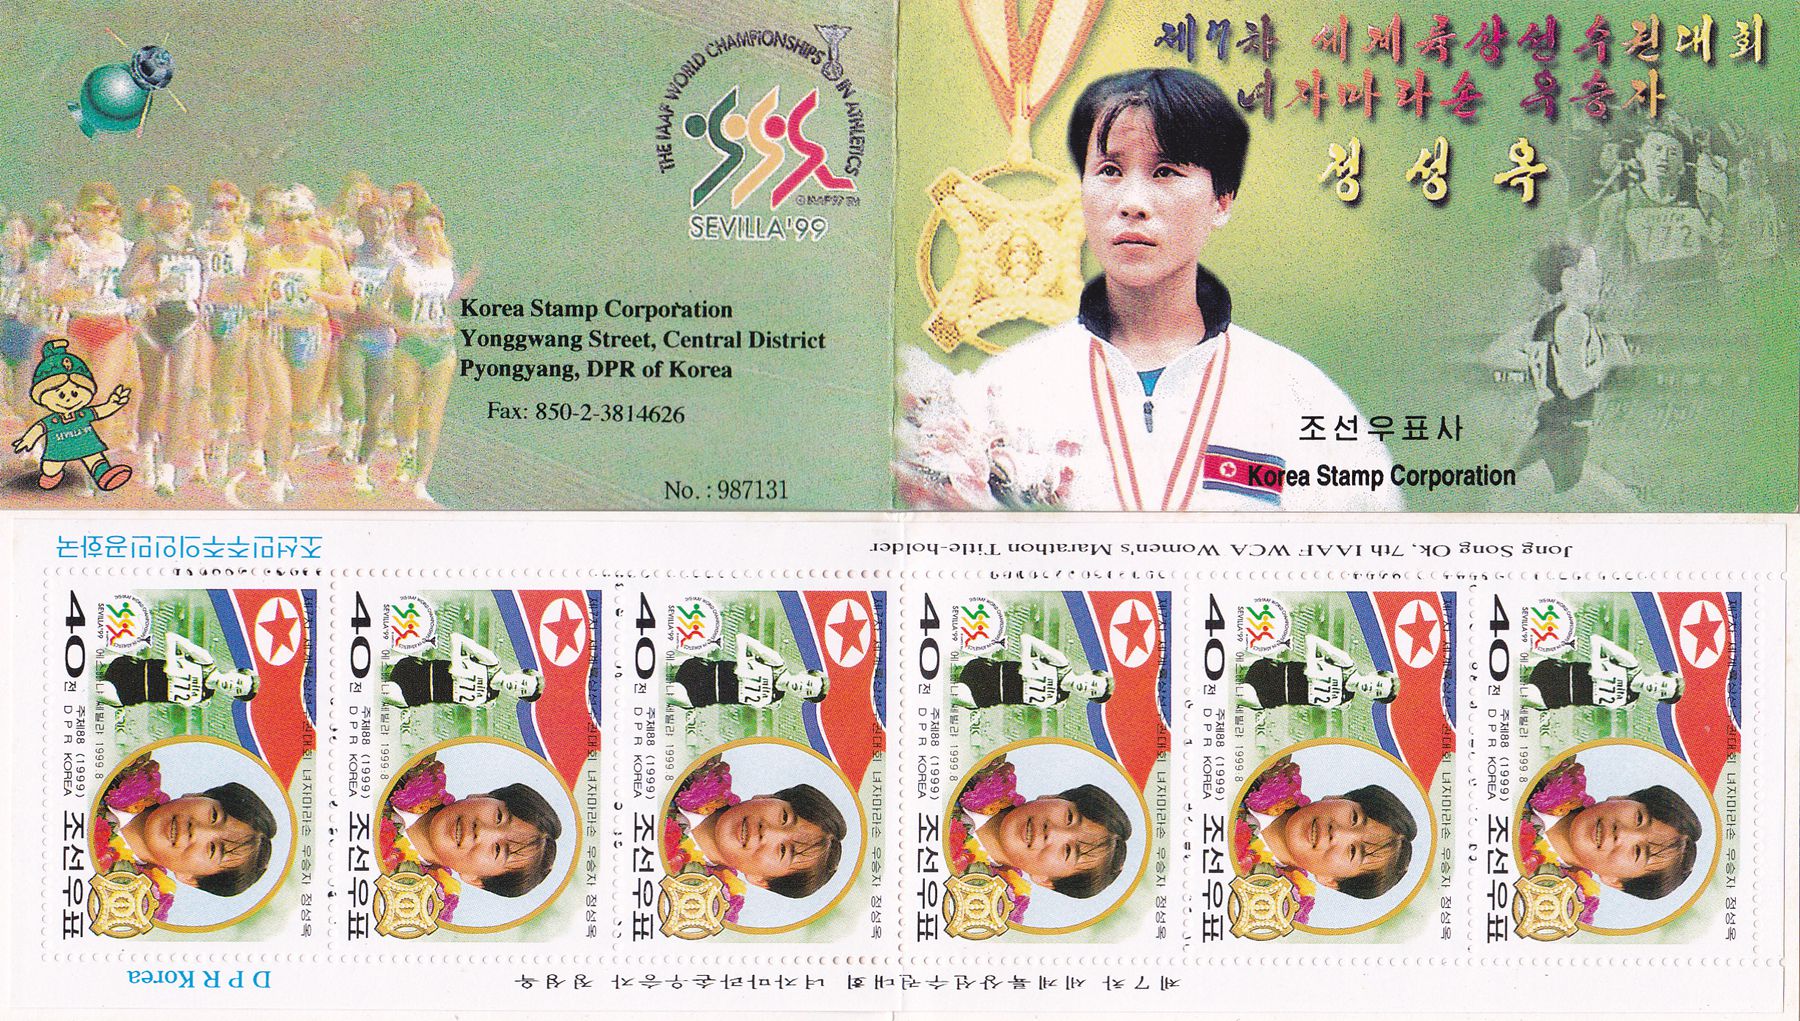 L9052, Korea "Jong Song Ok, Women Marathon Winner" Stamp Booklet, 1999